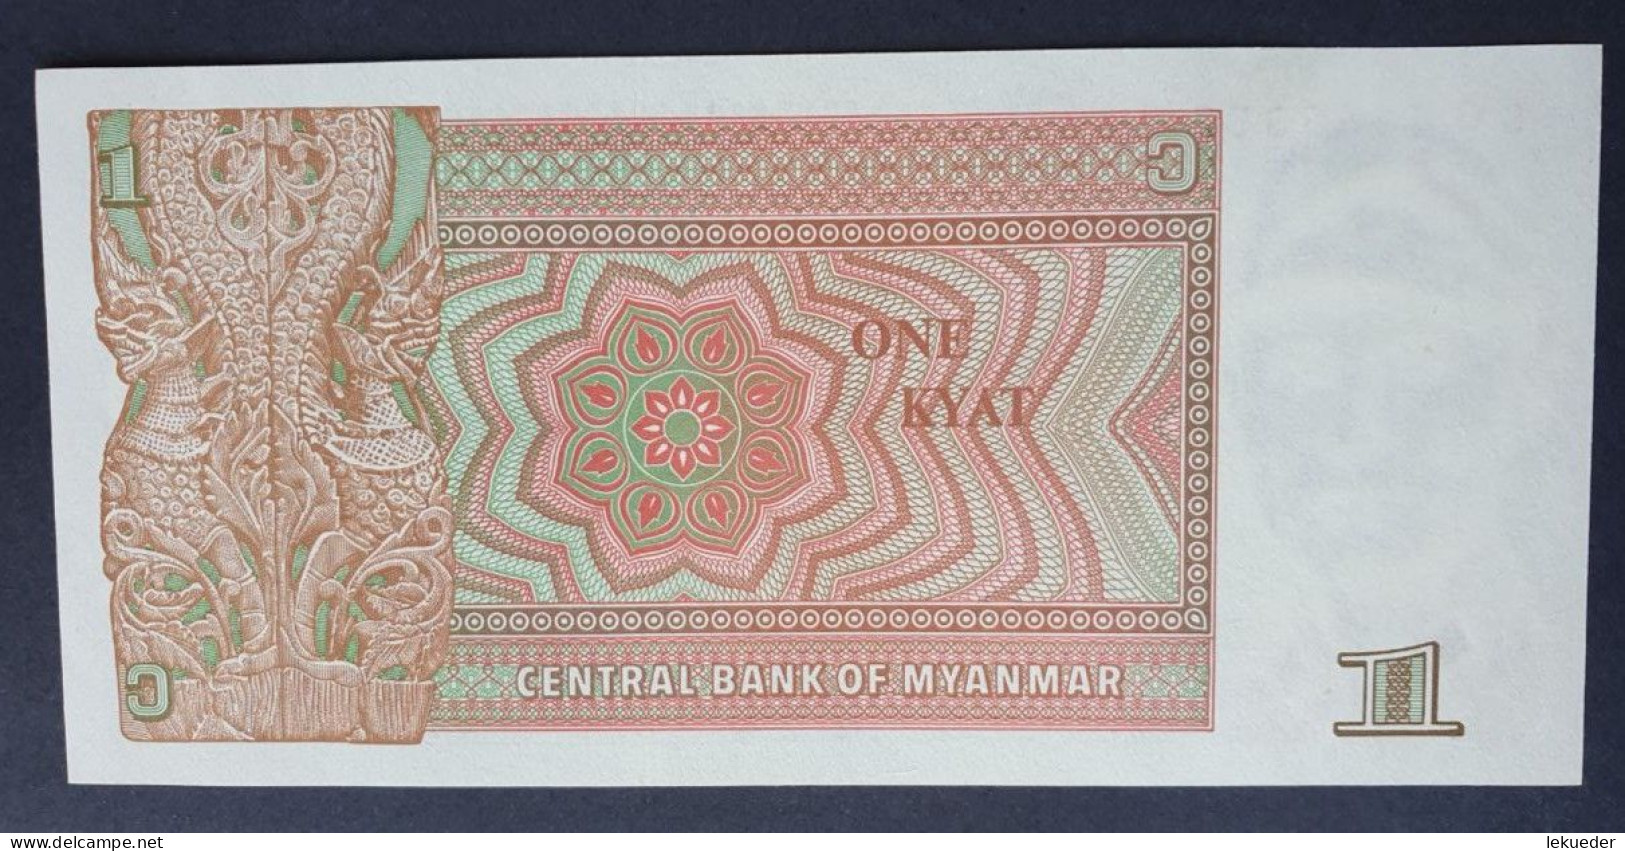 Billete De Banco De MYANMAR (Birmania) - 1 Kyat, 1990  Sin Cursar - Myanmar